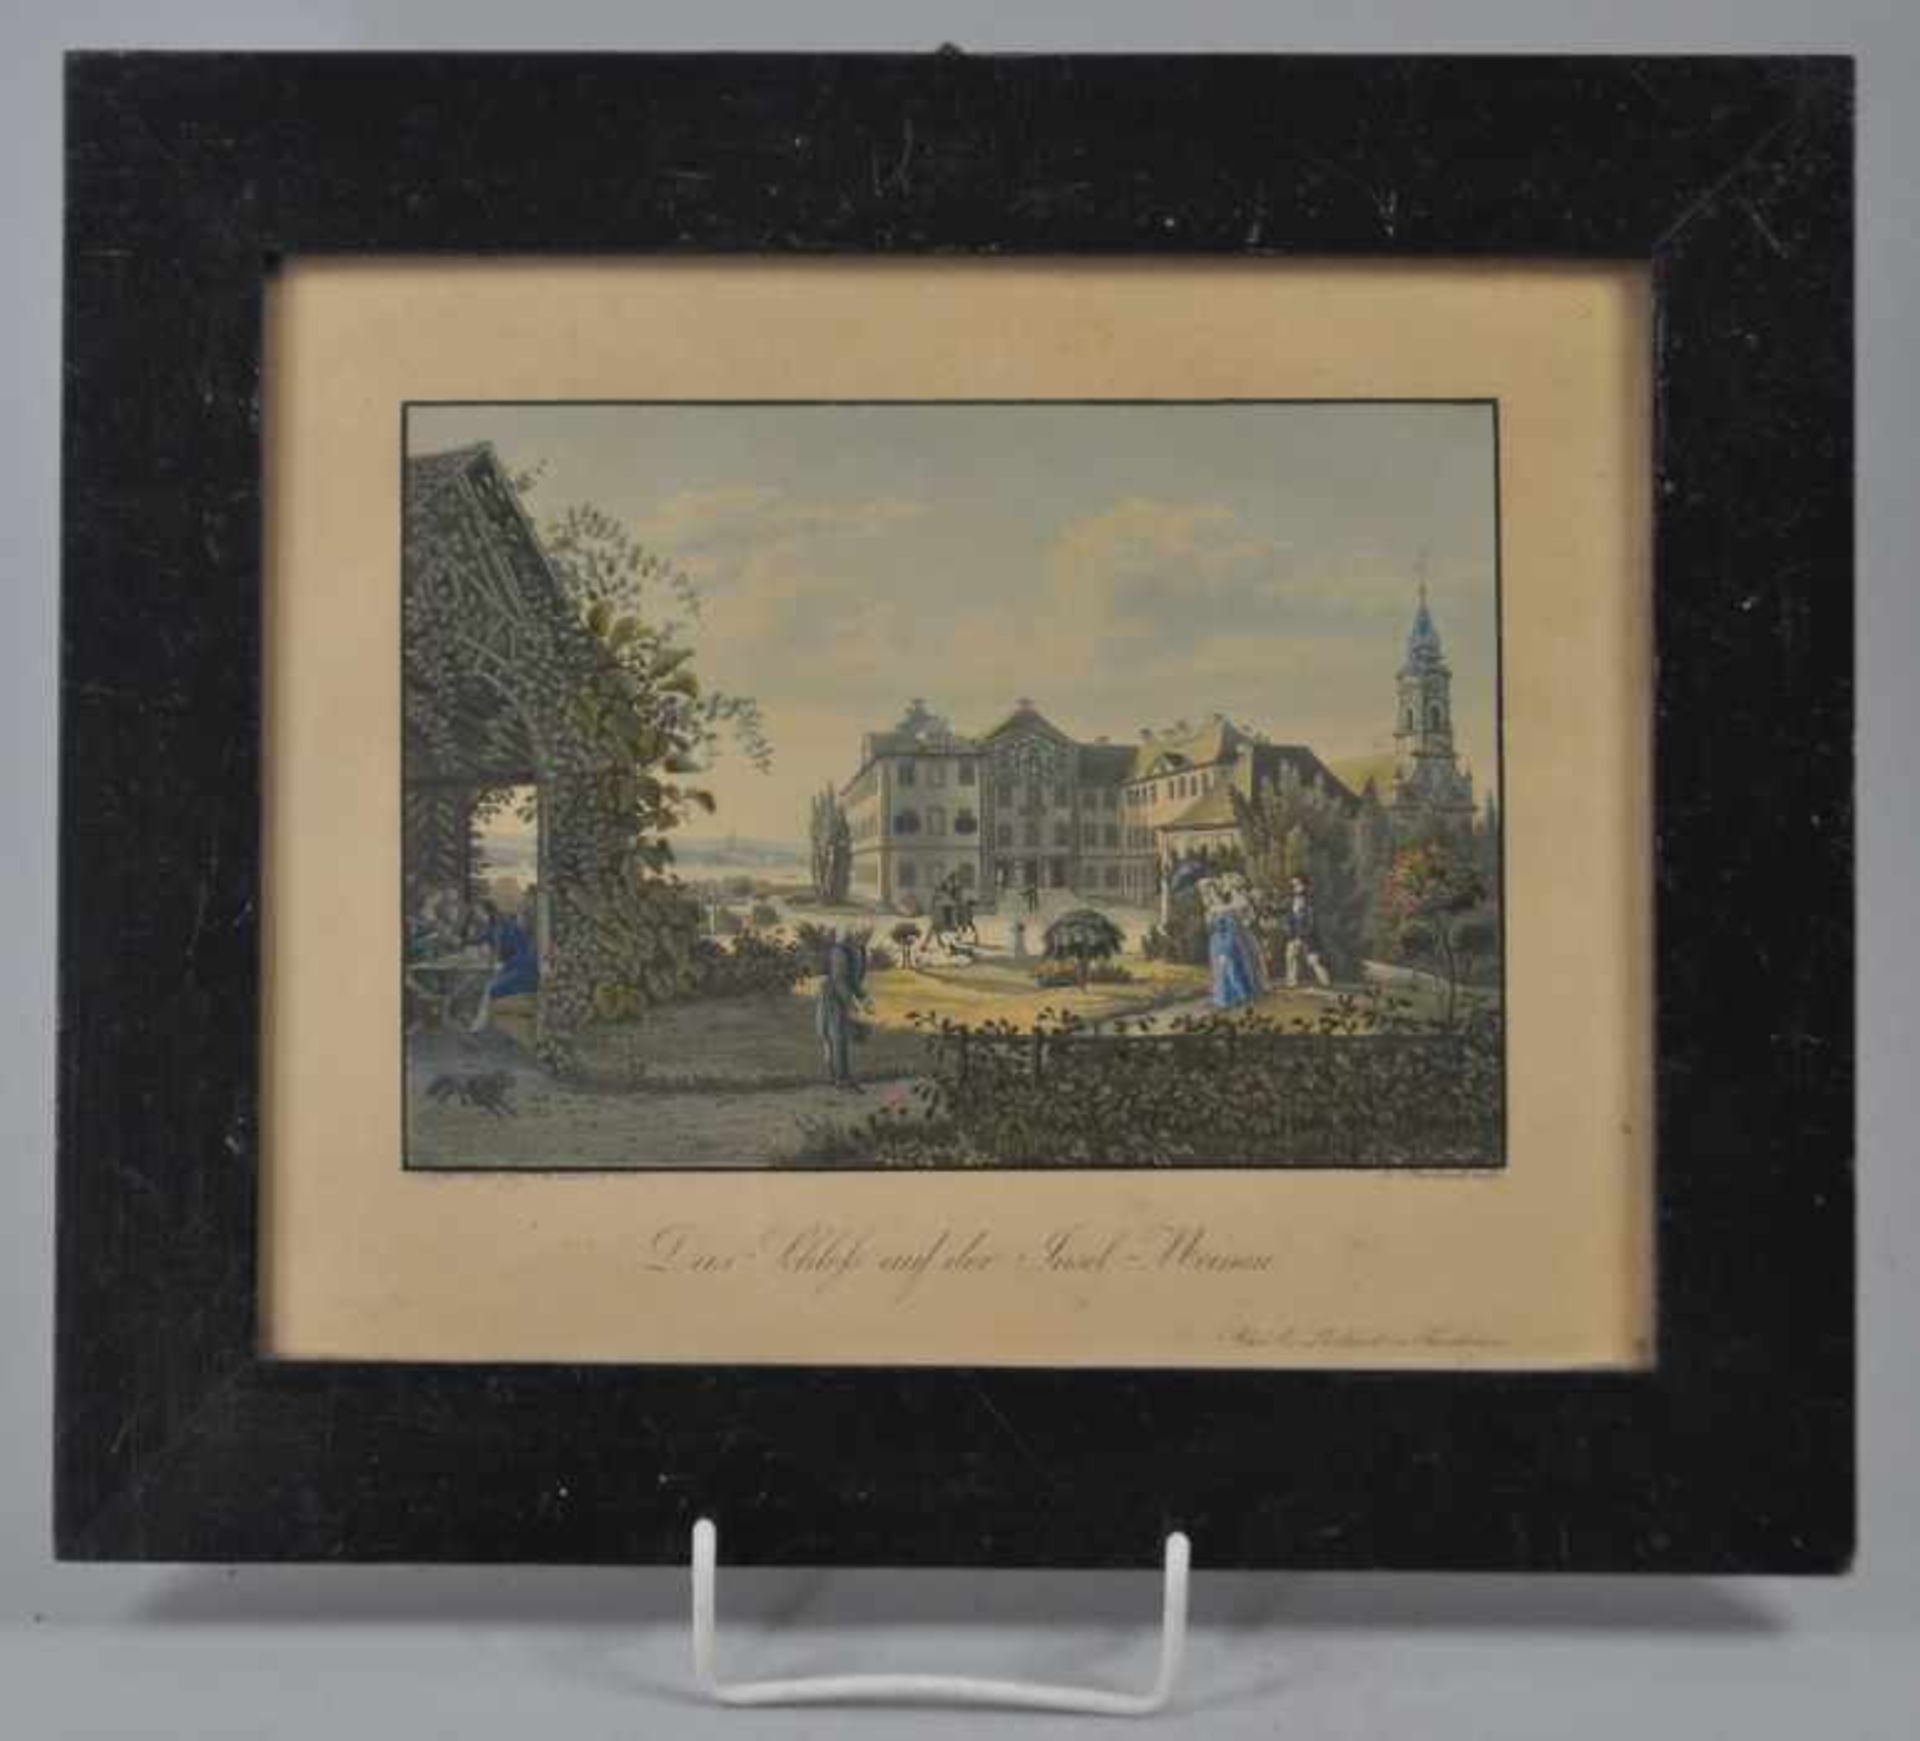 ANSICHT MAINAU (19.Jh.) "Das Schloß auf der Insel Meinau", nach Emanuel Labhardt (1810-1874) u. - Bild 2 aus 2